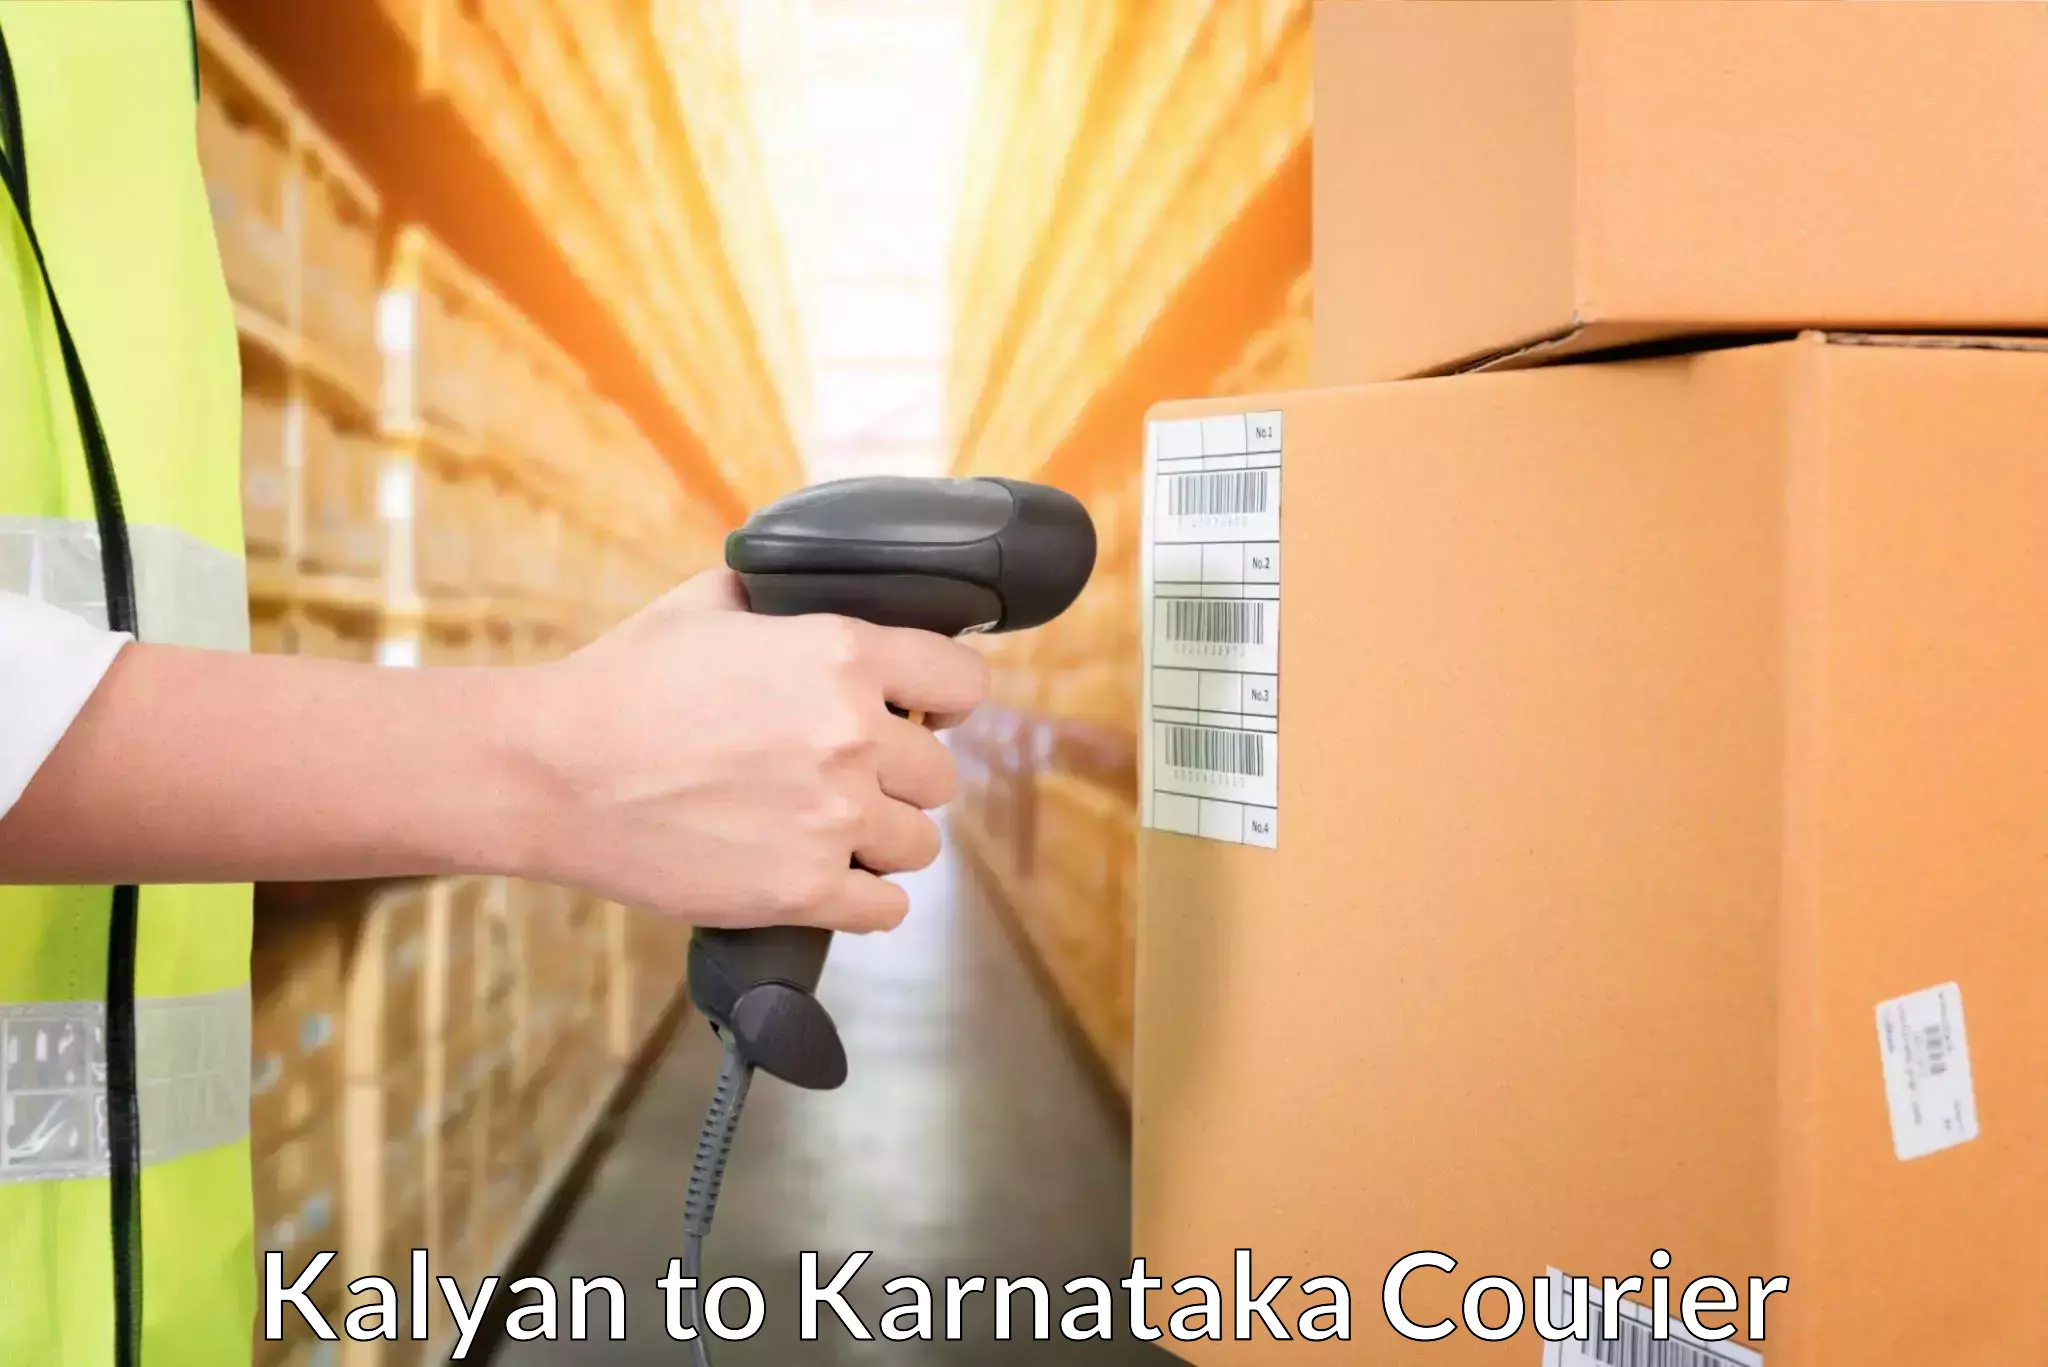 Expedited shipping methods Kalyan to NITTE Mangaluru